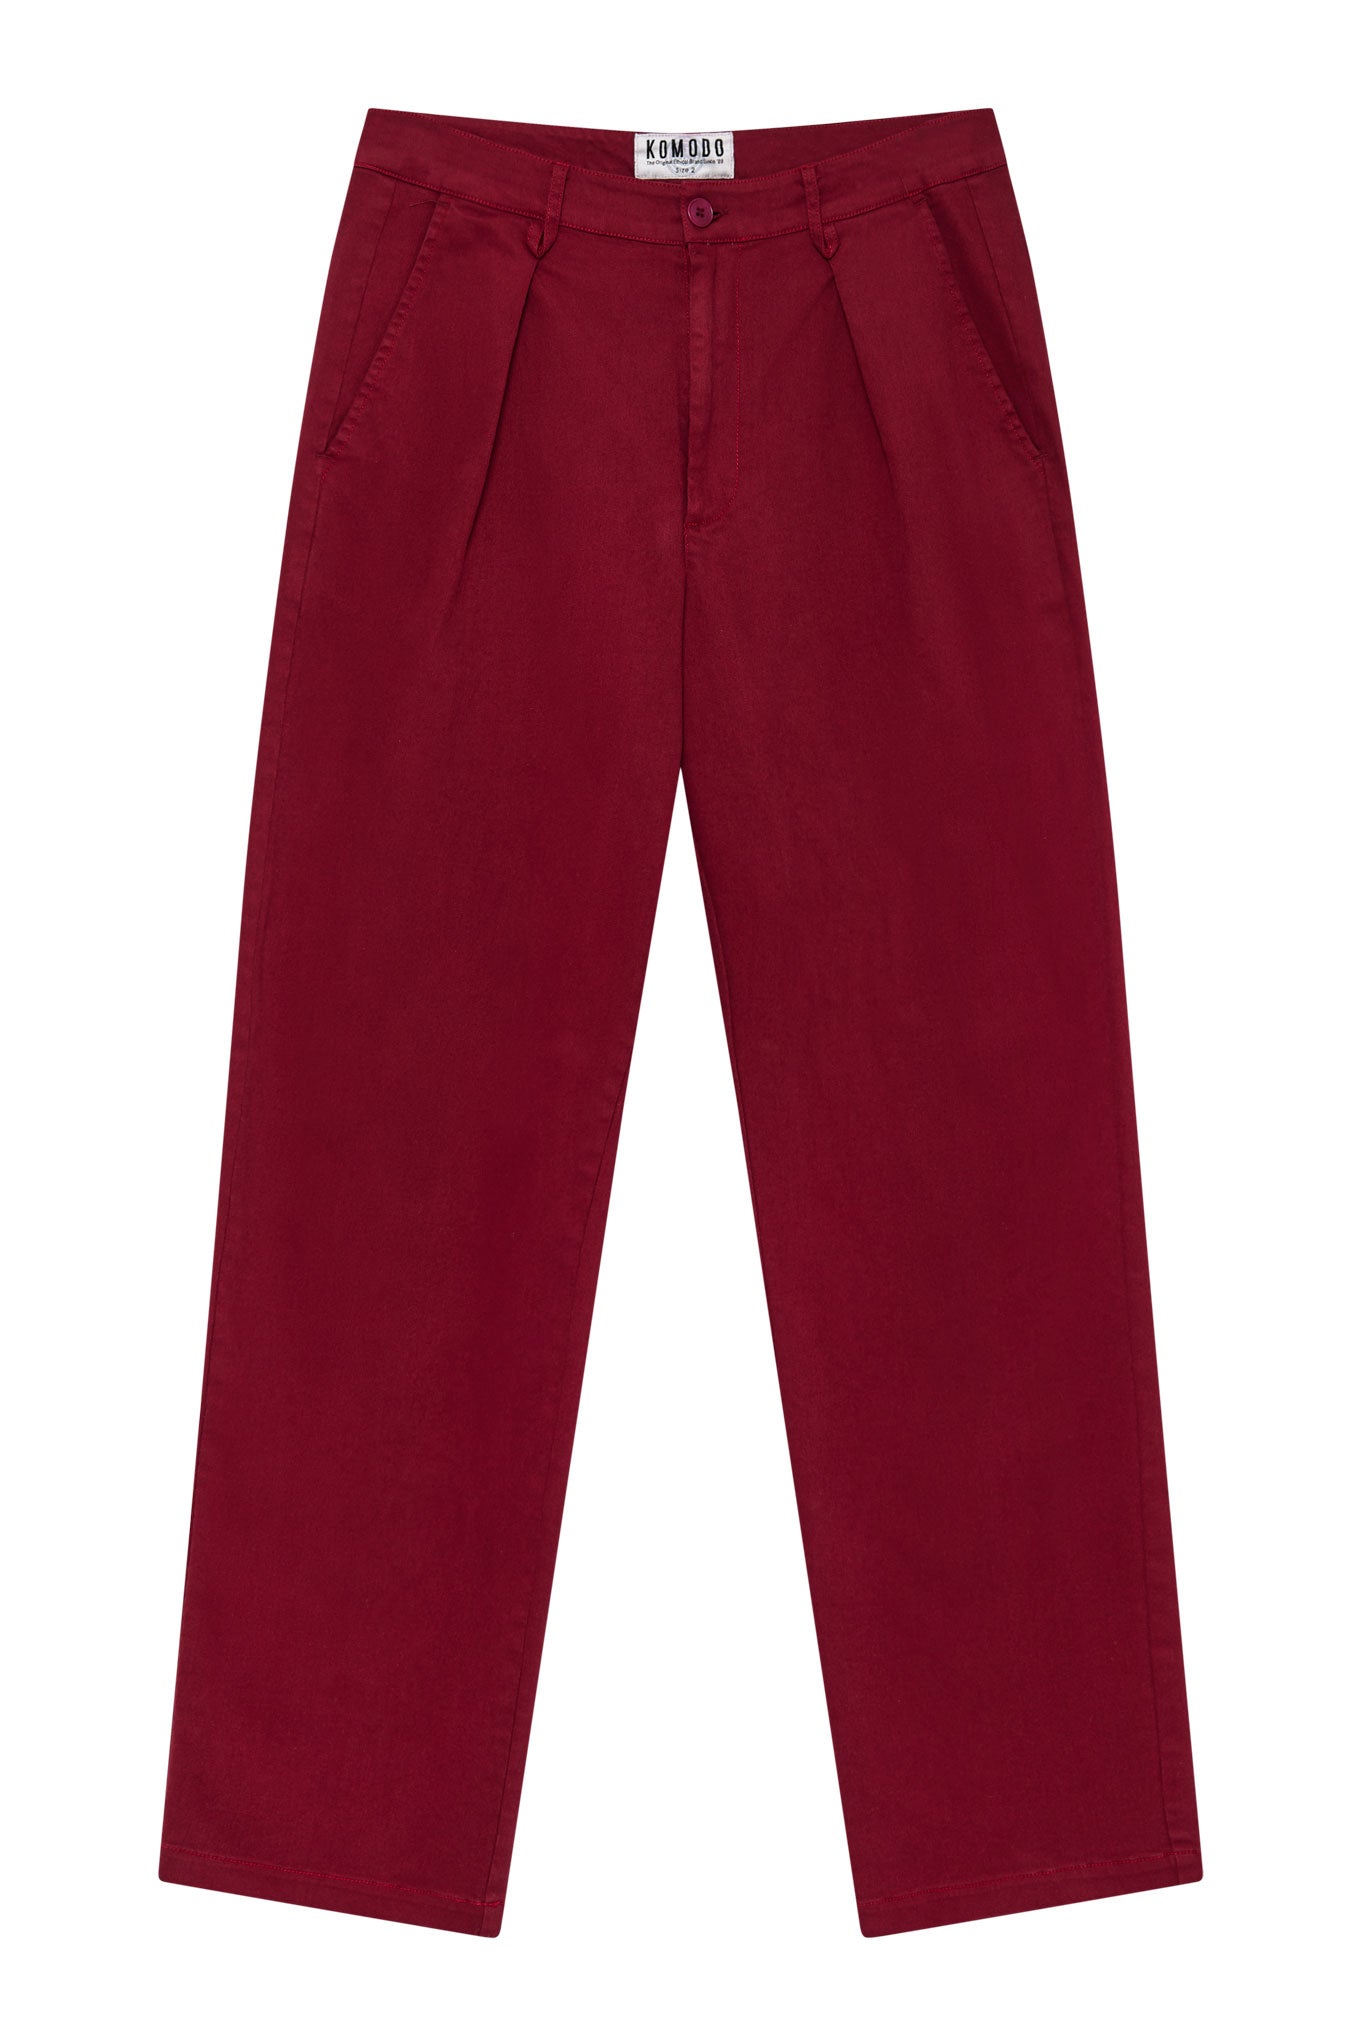 Pantalon BOWIE ample rouge foncé en coton biologique de Komodo